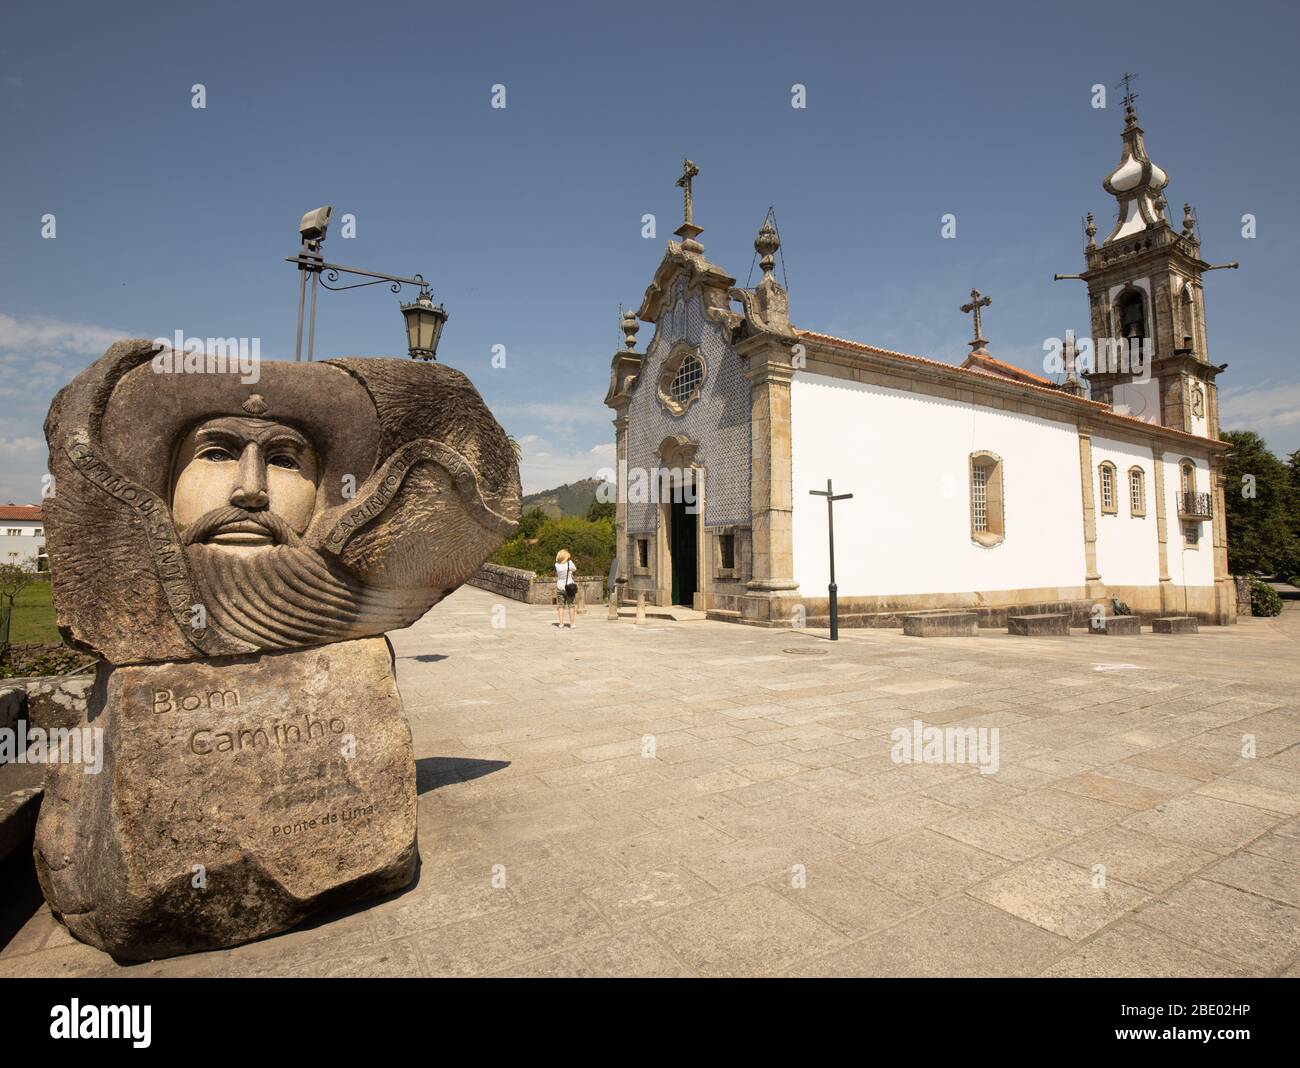 Grande statue de bienvenue et panneau de bienvenue BOM Camino sur la route centrale Camino Portugués, Ponte de Lima, Portugal Banque D'Images